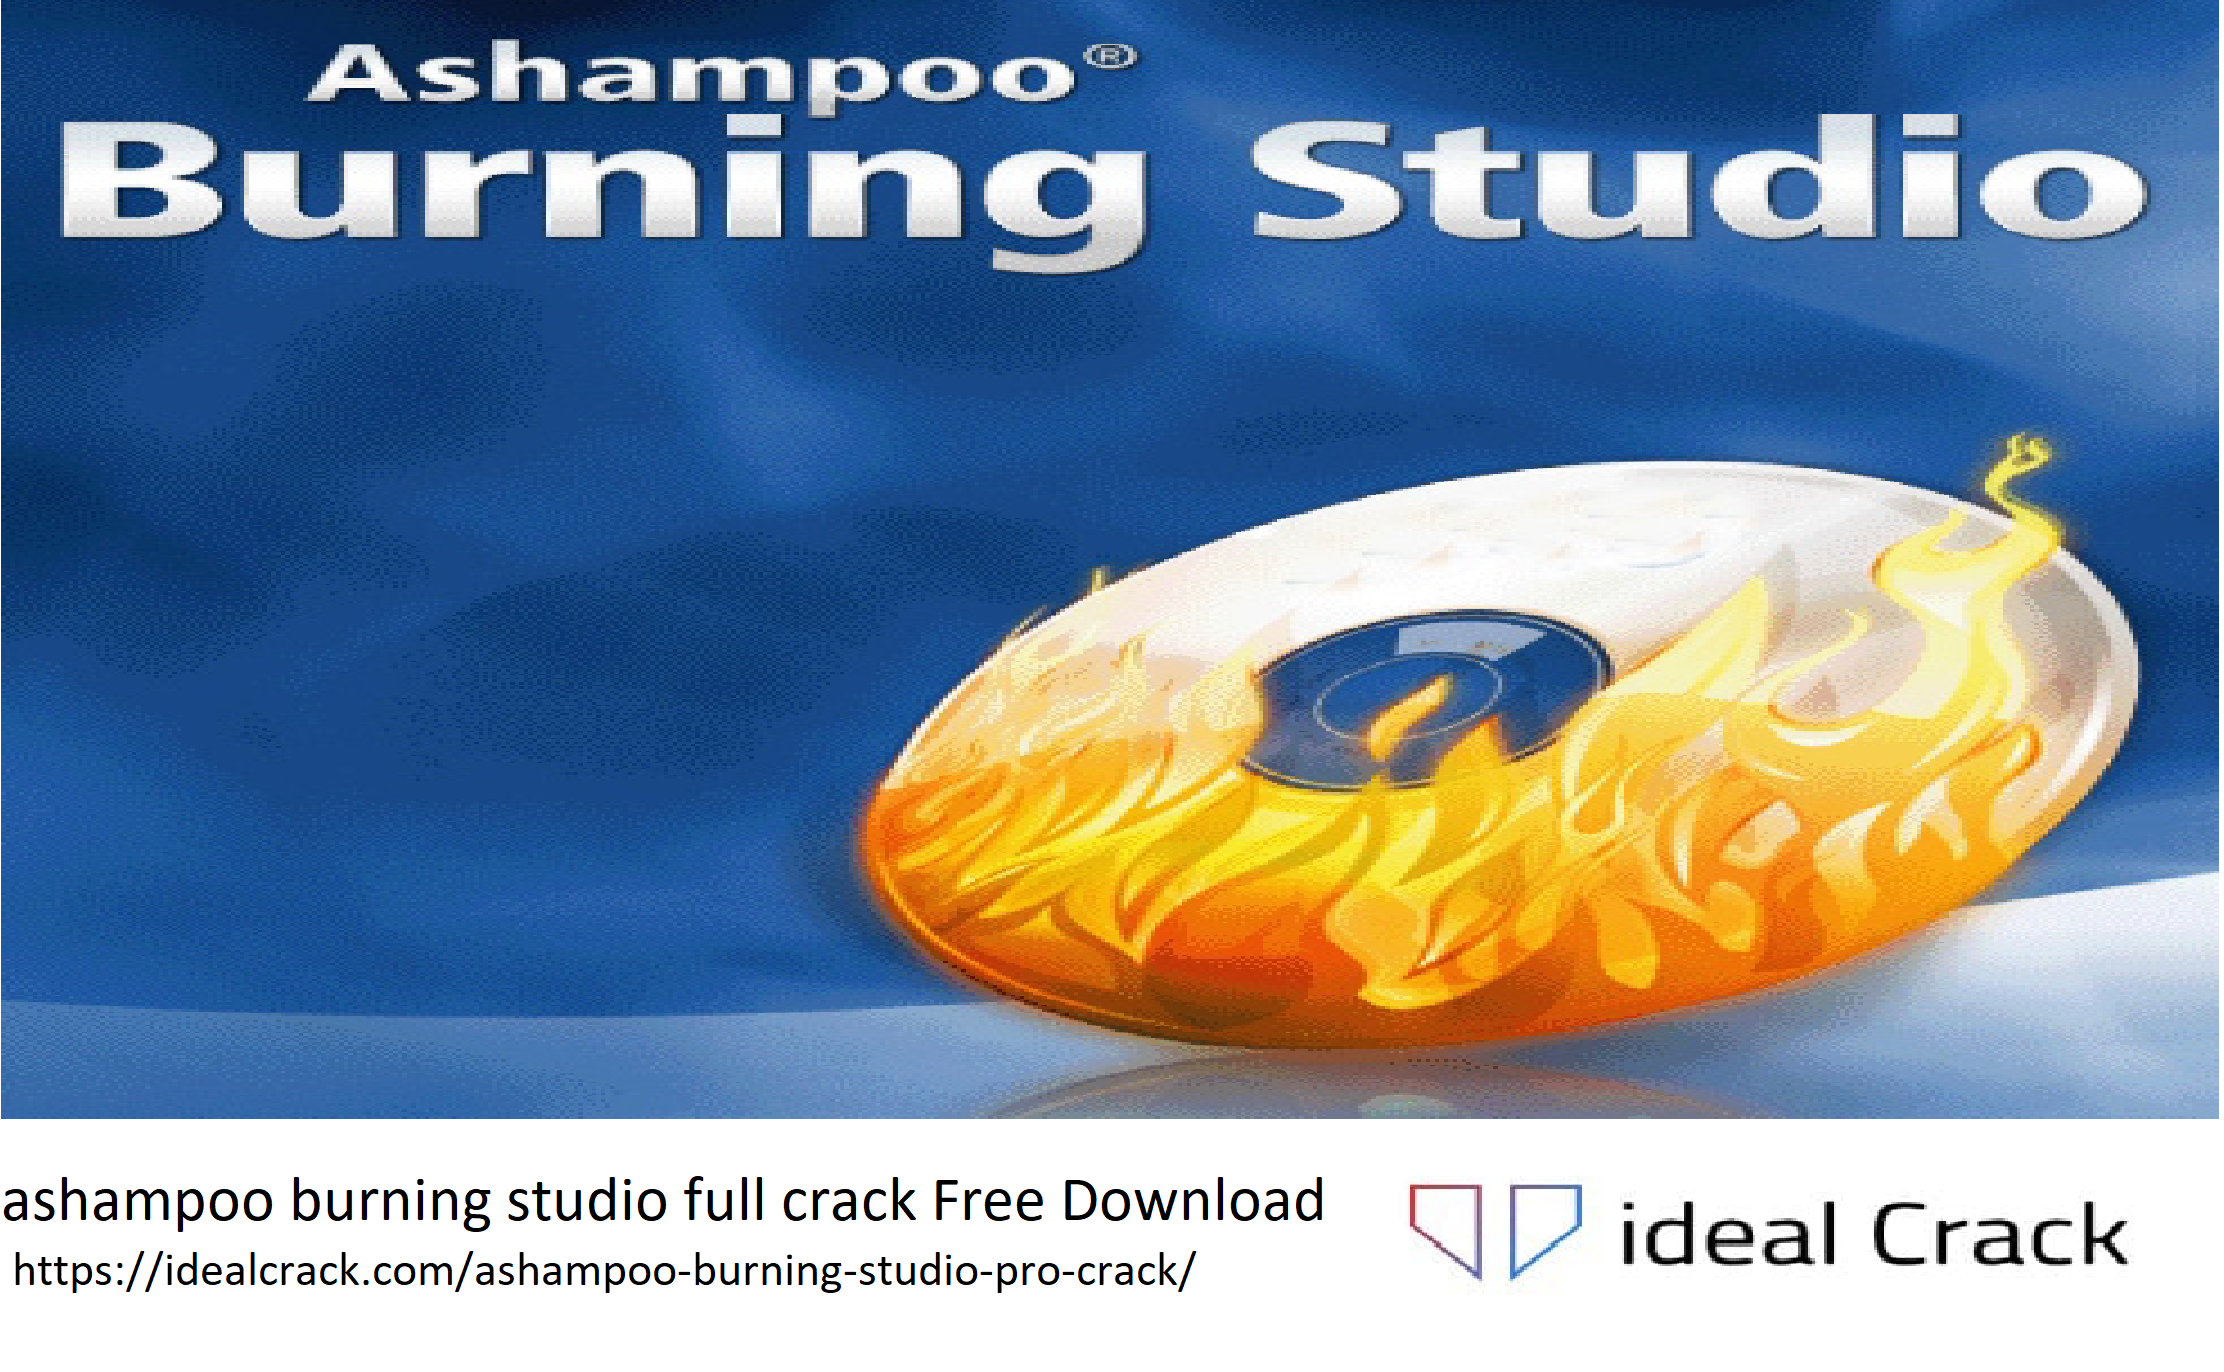 ashampoo burning studio full crack